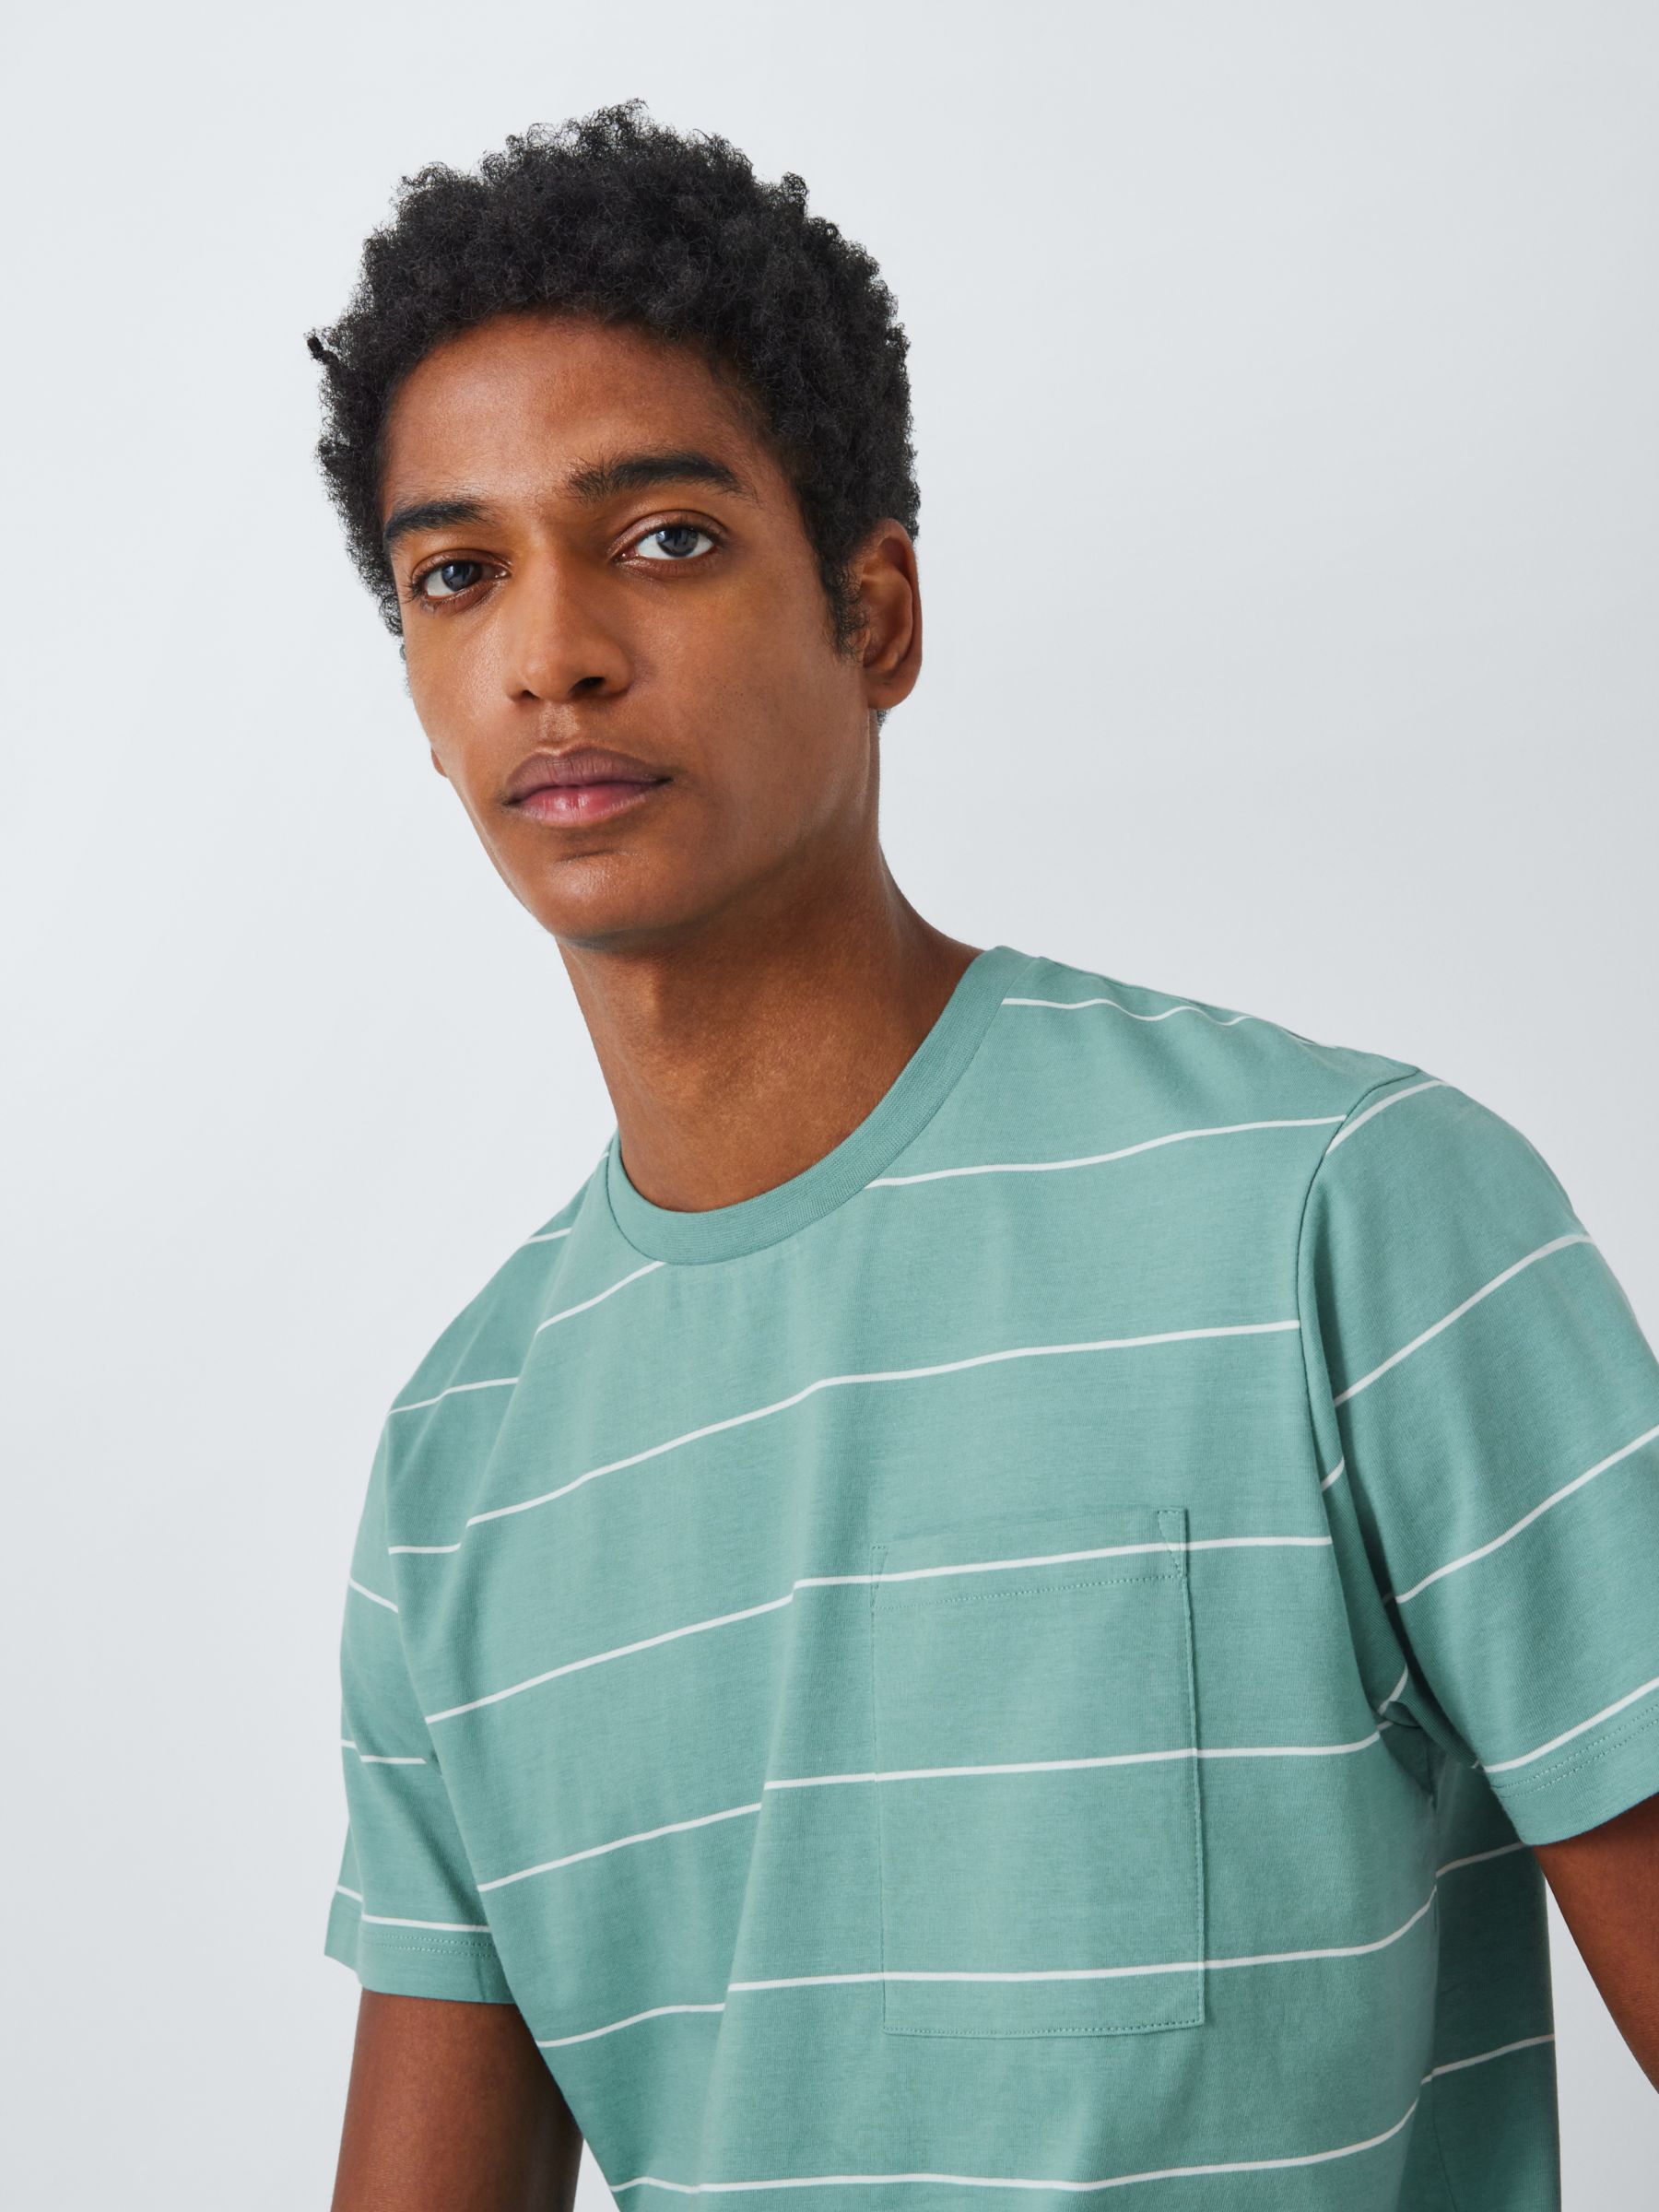 Buy Kin Space Stripe Pocket Short Sleeve T-Shirt Online at johnlewis.com